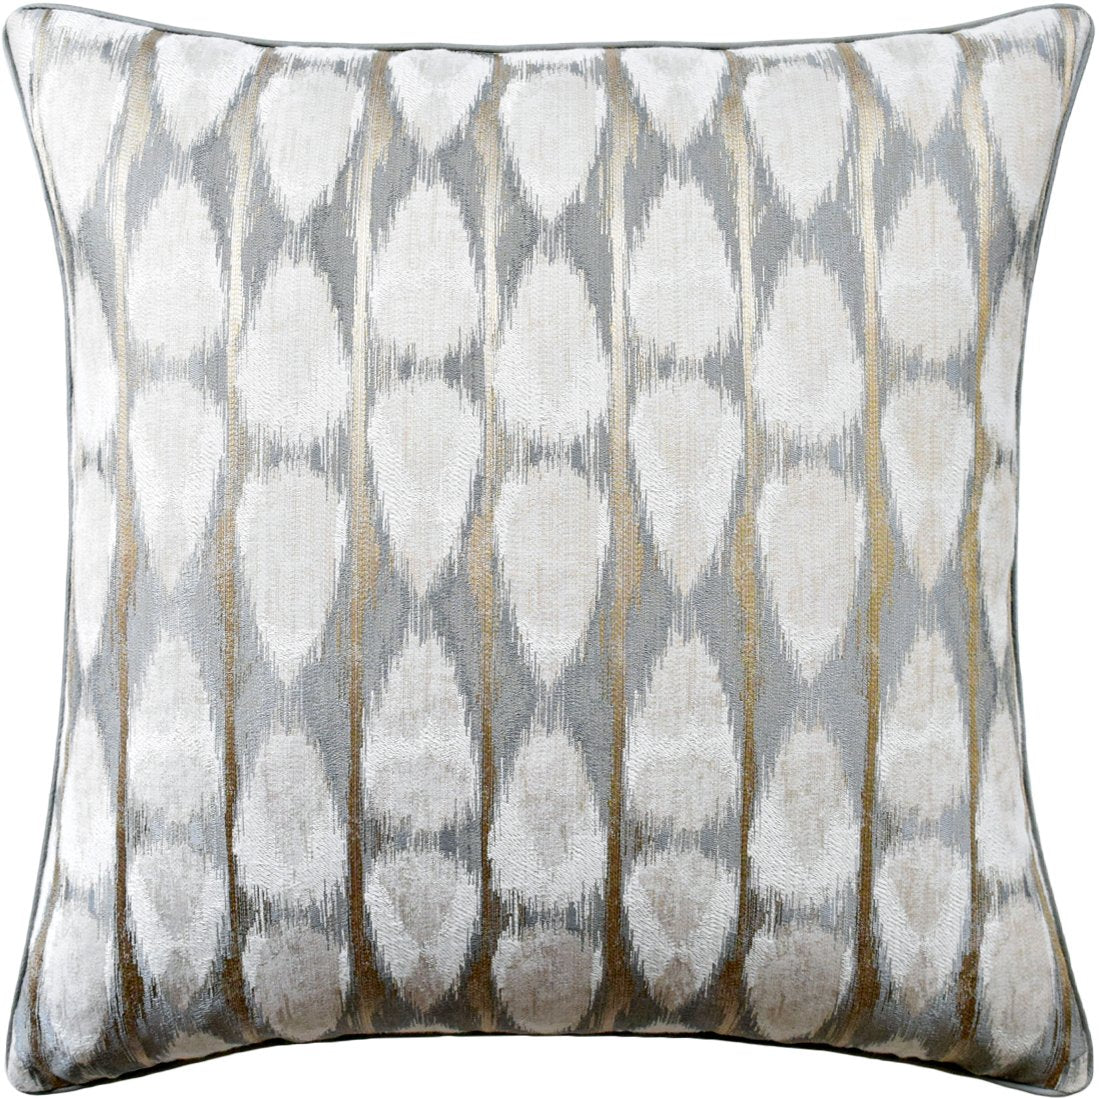 Dubai Ikat Throw Pillow in Granite - Ryan Studio at Fig Linens and Home